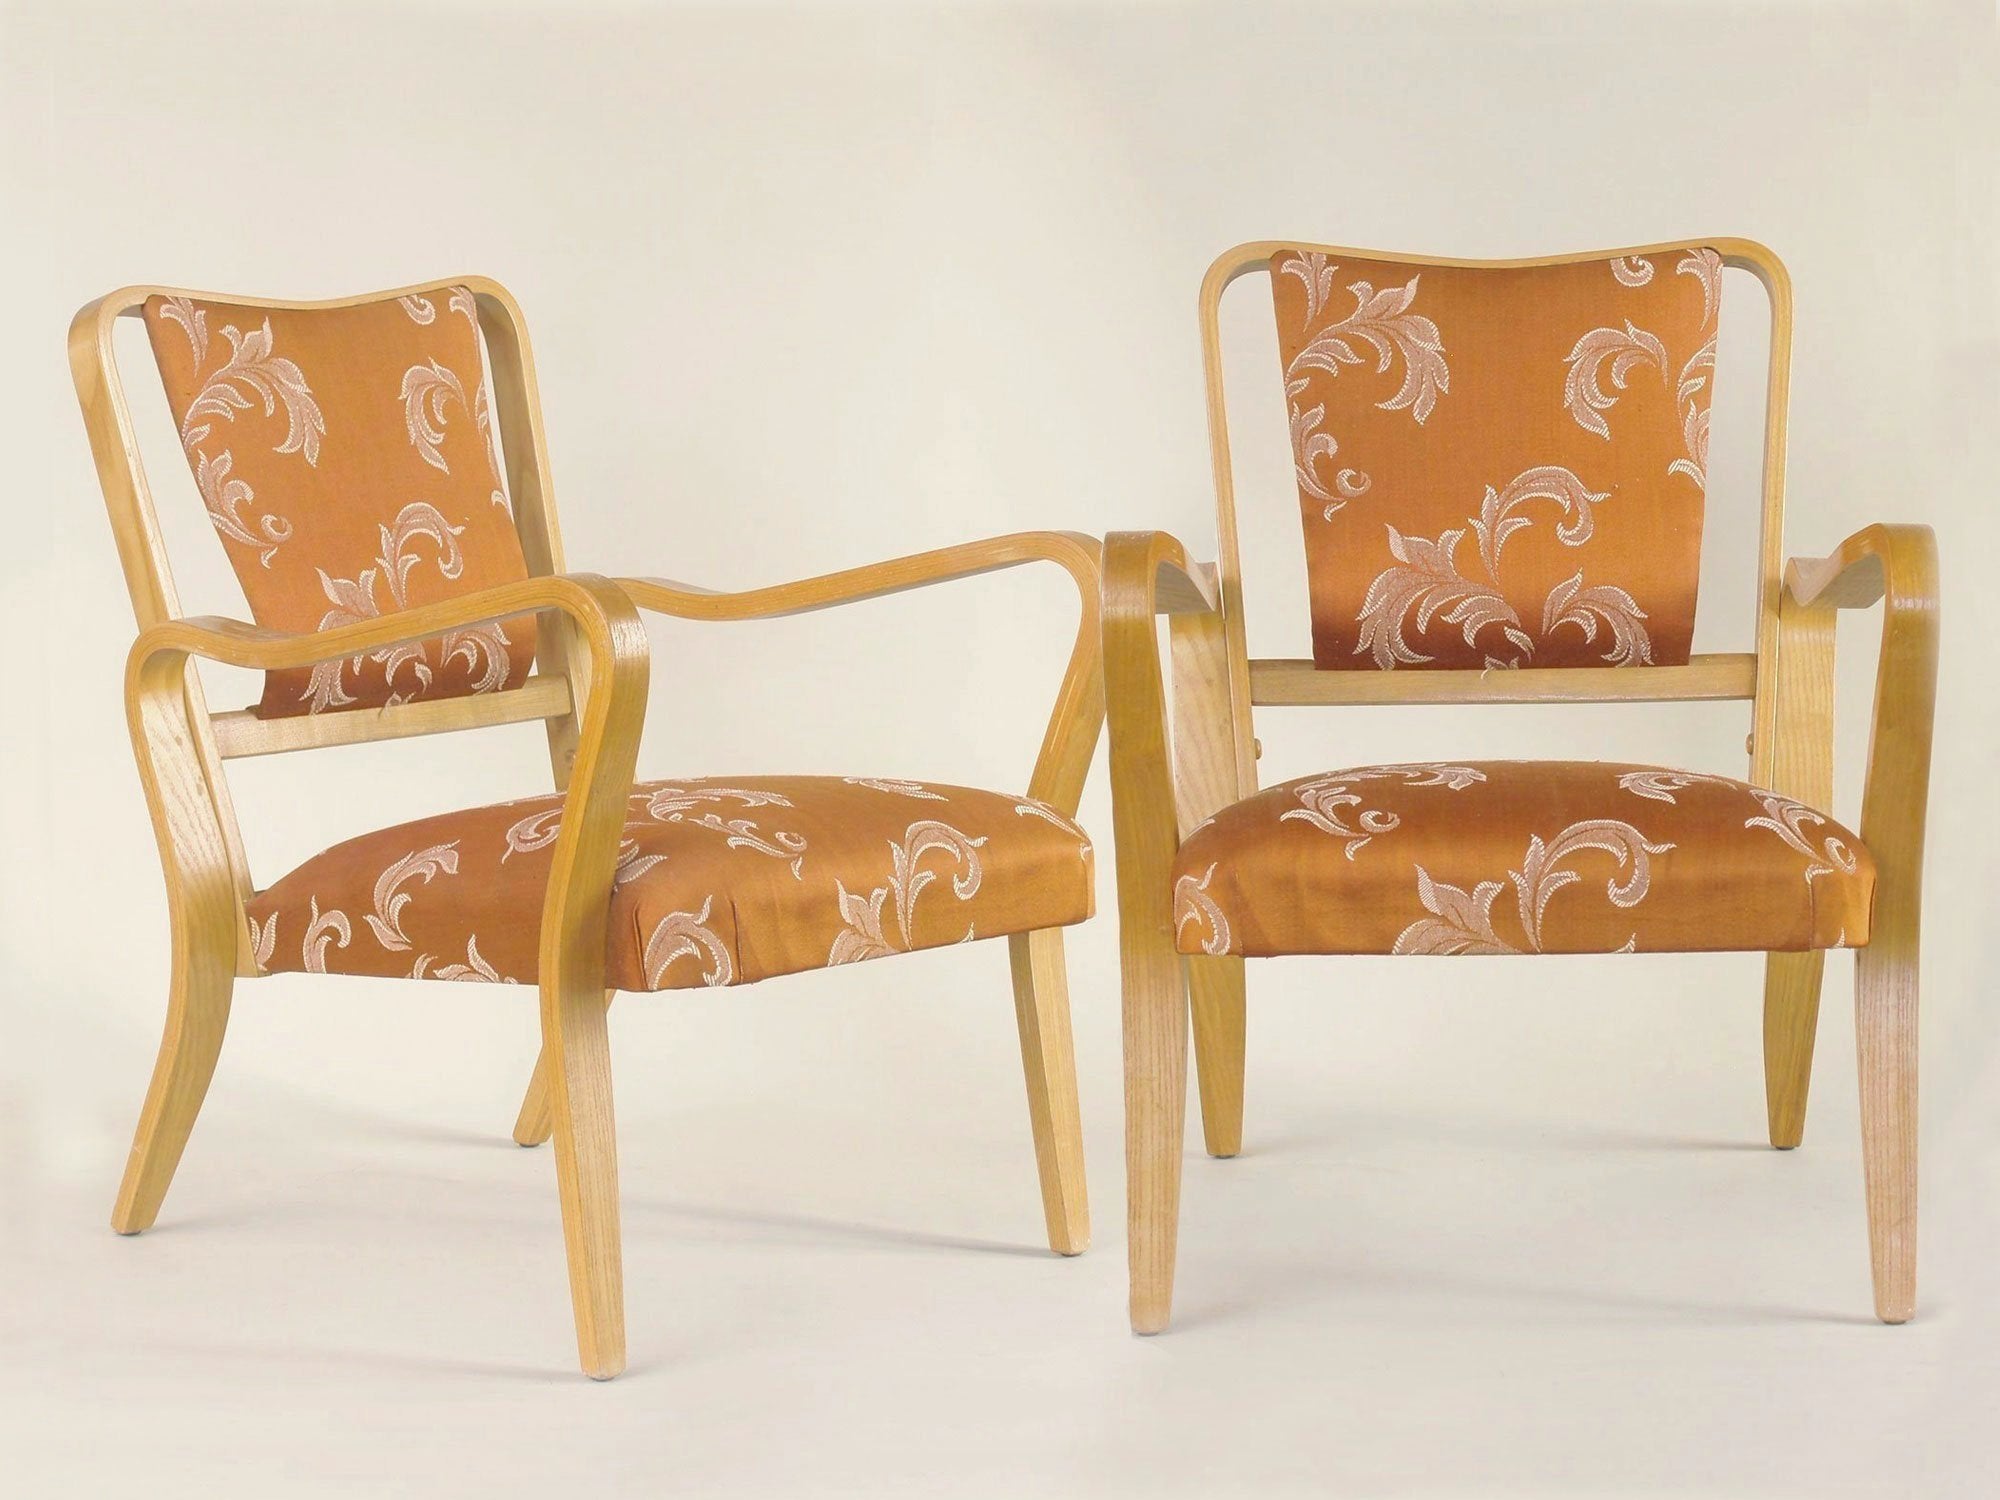 Rare paire de fauteuils Linden par G.A. Jenkins pour Thonet & Packet Furniture, Royaume-Uni (vers 1948)..Rare plywood Linden armchairs by G.A. Jenkins for Thonet & Packet Furniture, set of 2, United Kingdom (circa 1948)